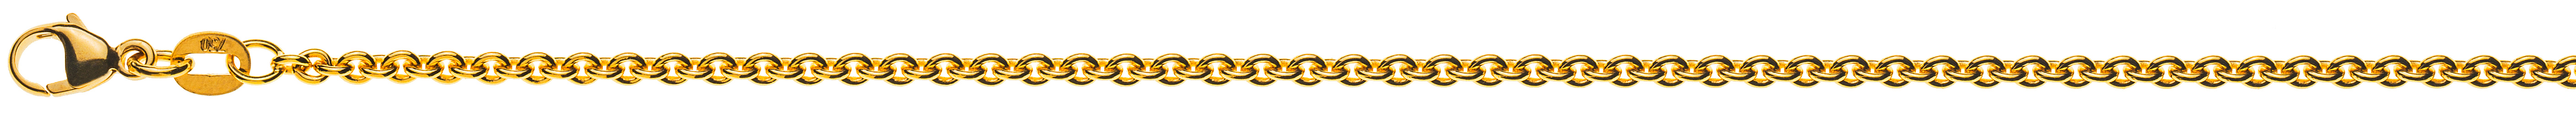 AURONOS Prestige Halskette Gelbgold 18K Rundanker 45cm 2.3mm